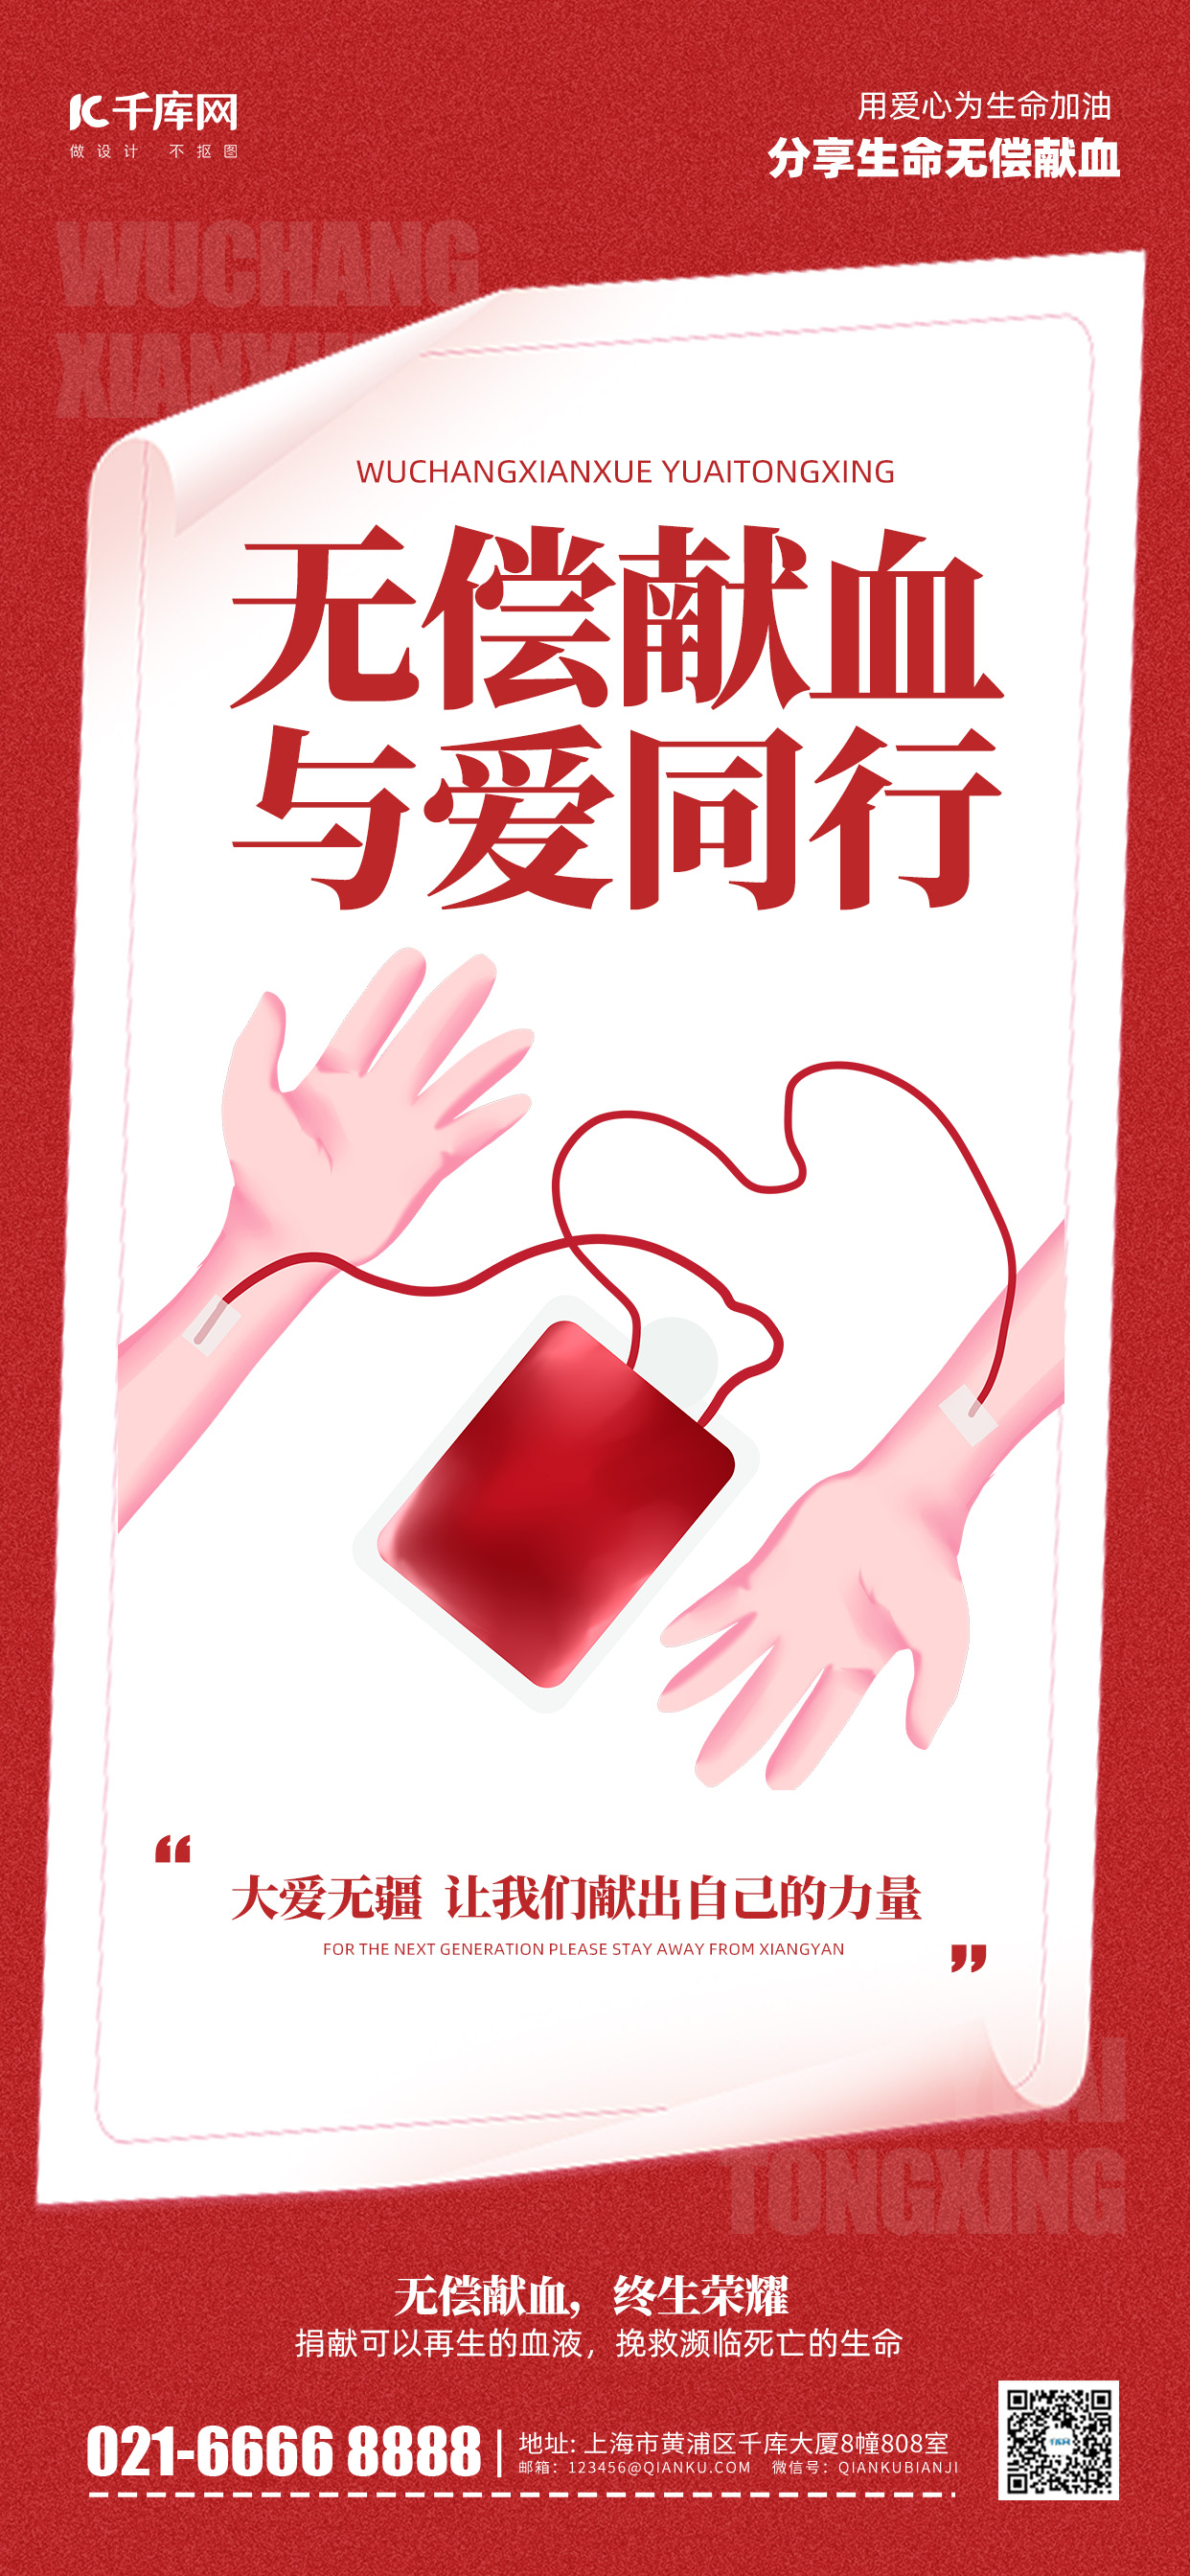 无常献血公益宣传红色简约风长图海报创意广告海报图片